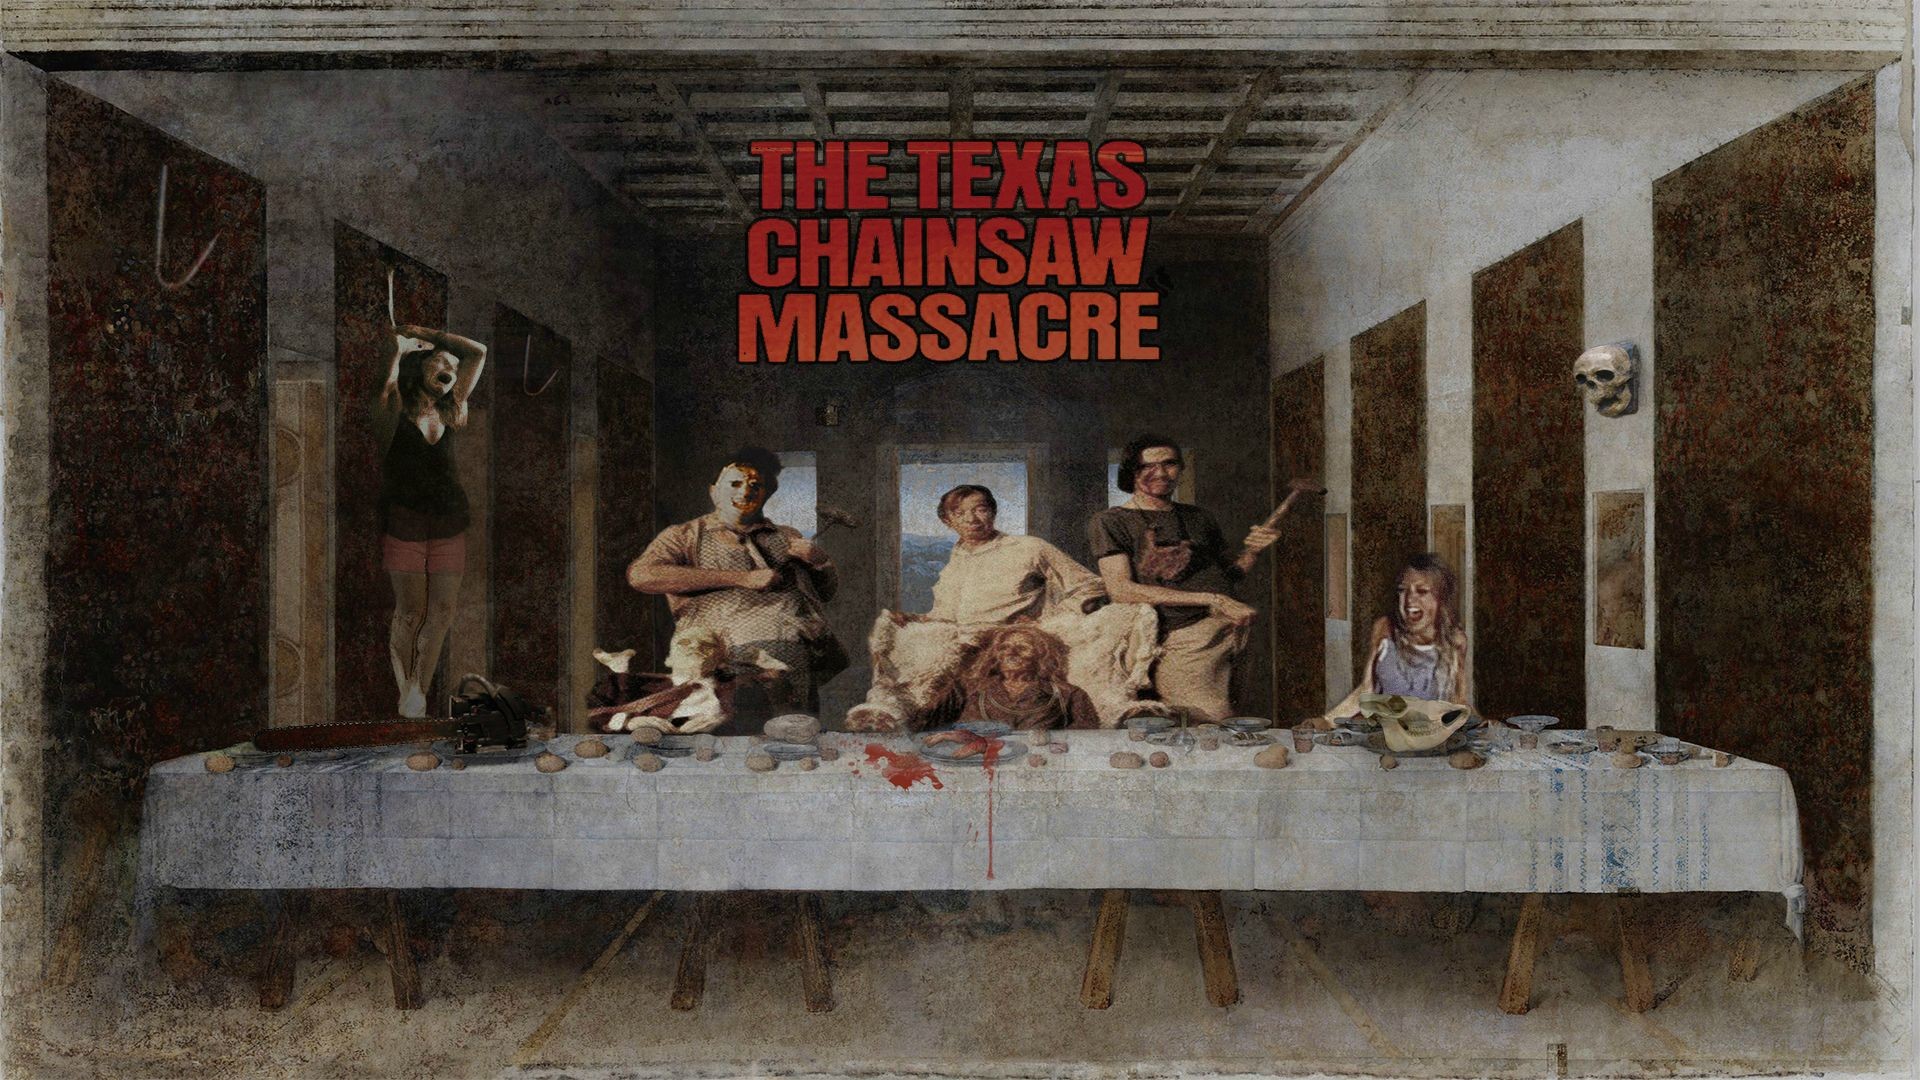 1920x1080 The Texas Chainsaw Massacre Kitchen wallpaper Pinterest Texas cha...